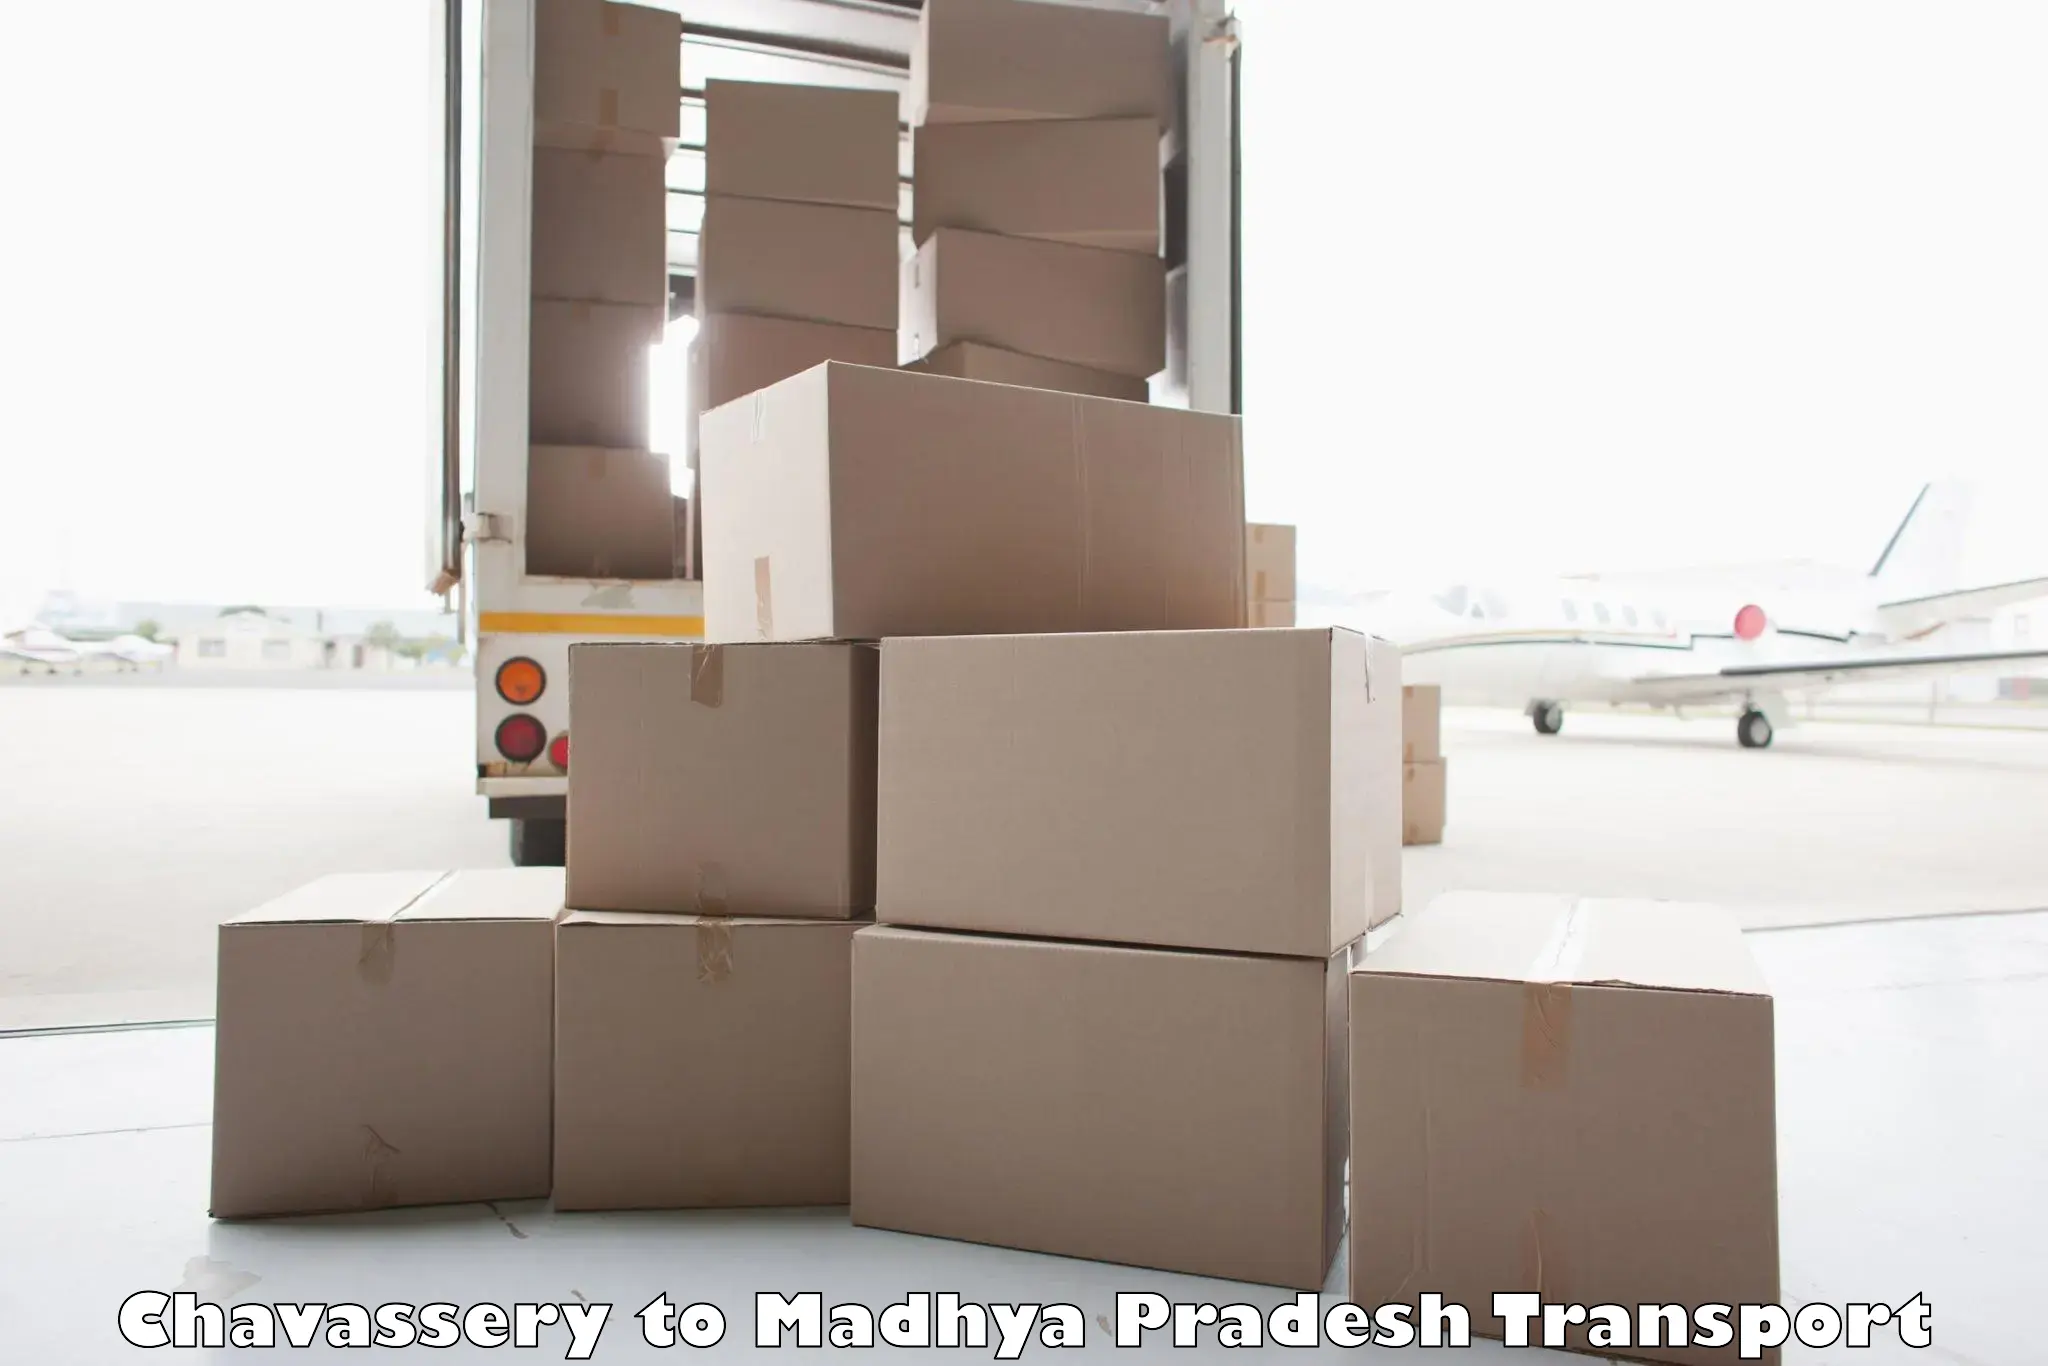 Transport services Chavassery to Madhya Pradesh